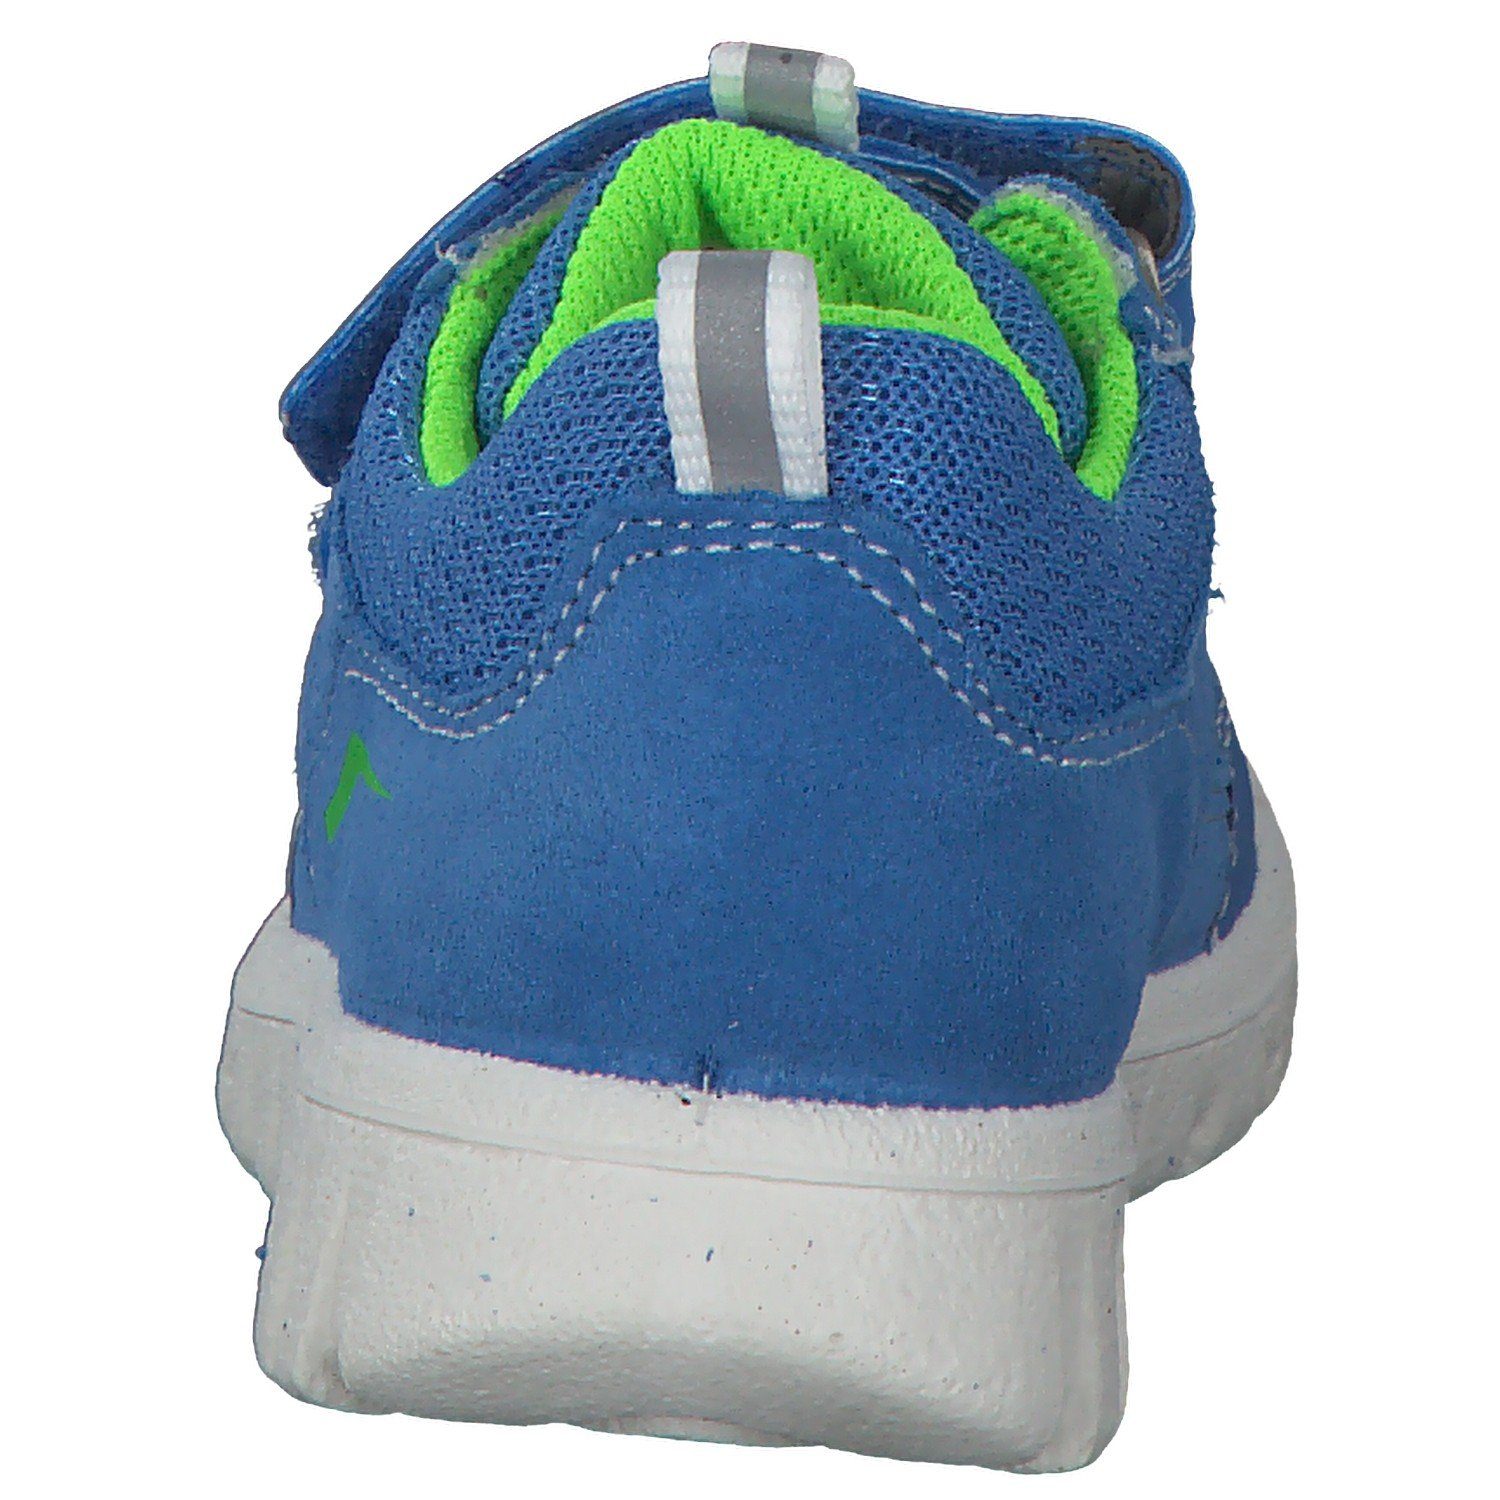 SPORT7 Sneaker 06194 MINI Superfit hellblau/grün Superfit M